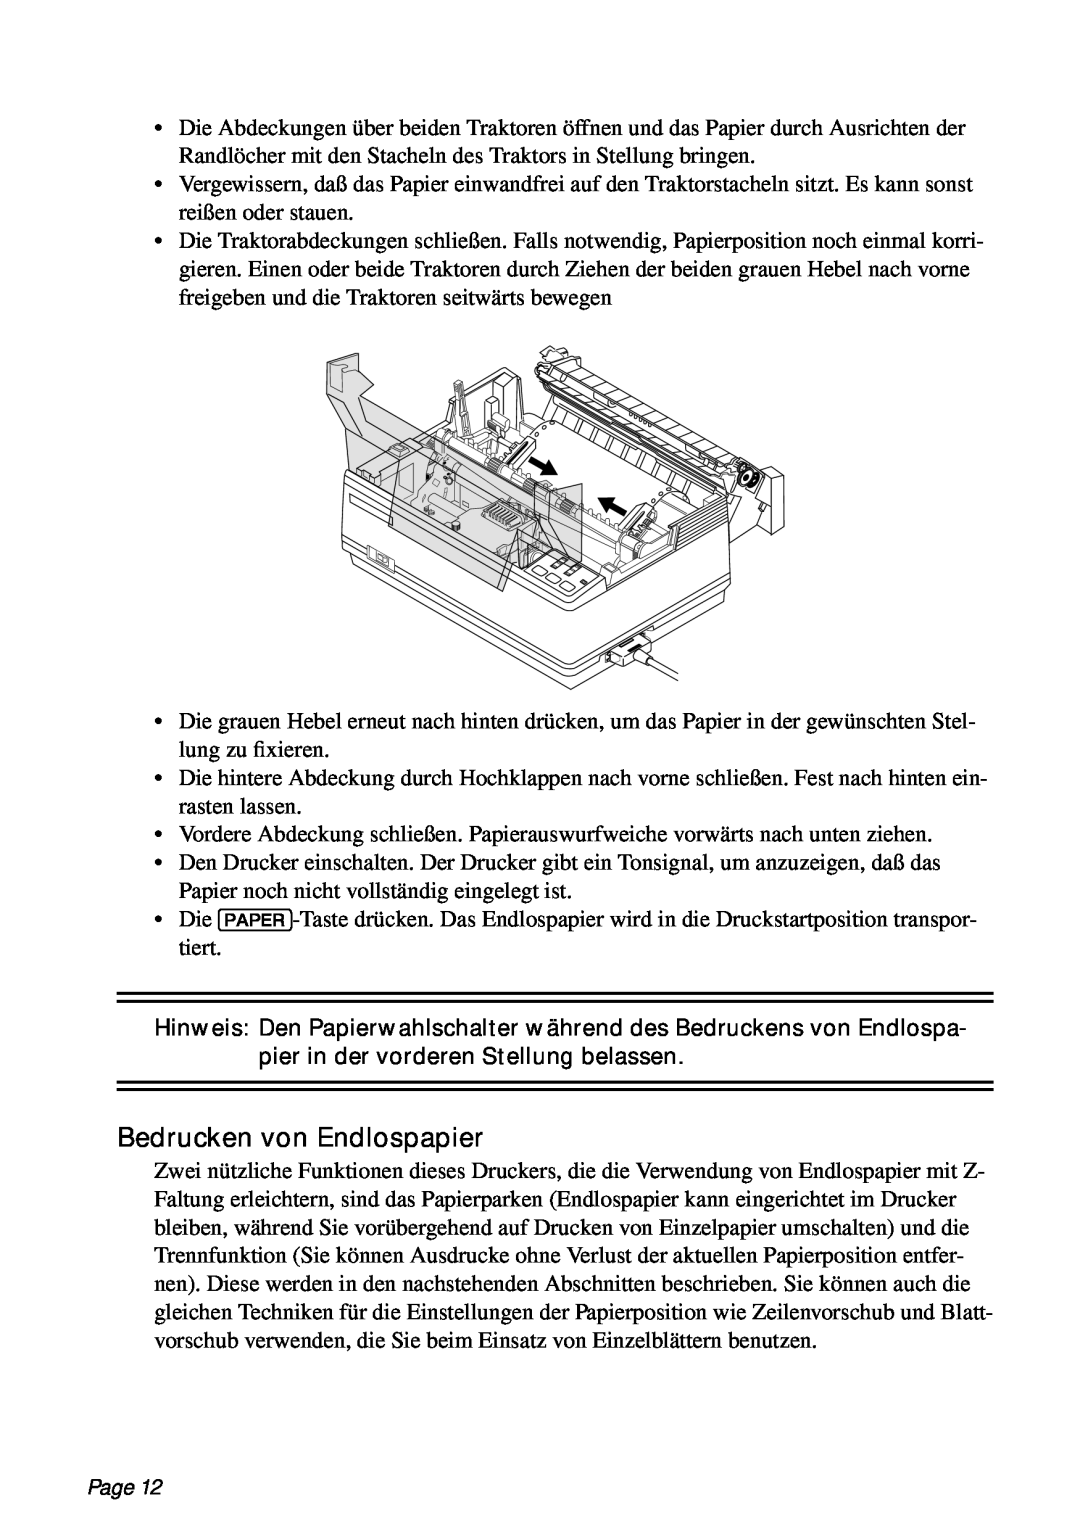 Star Micronics PT-10Q user manual Bedrucken von Endlospapier, Page 